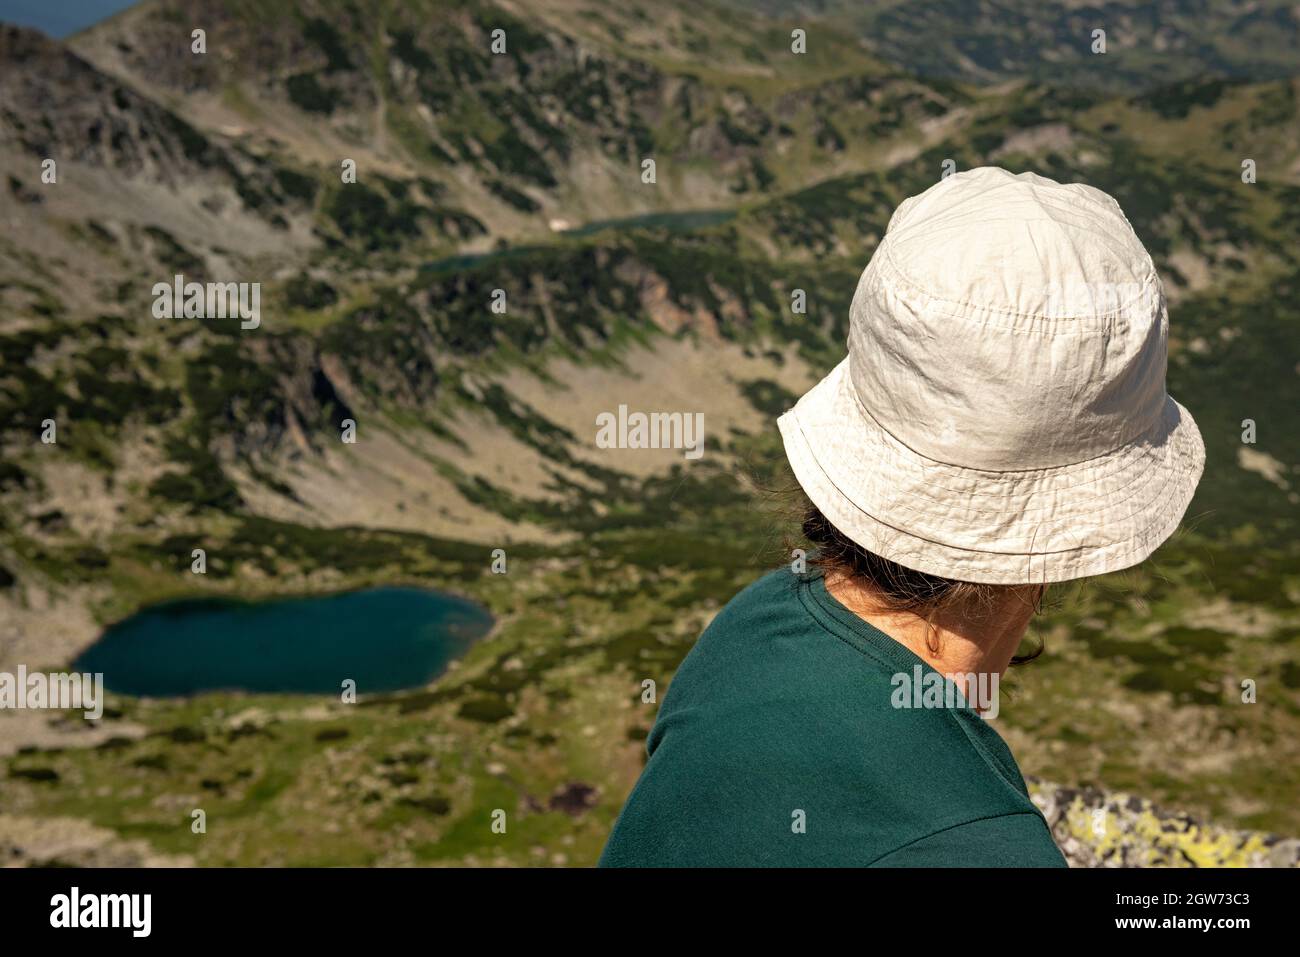 Escursioni in montagna in Bulgaria. Escursionista femminile sul Rilets Peak, a 2713 m di altezza, che si affaccia sul lago del Diavolo nel Parco Nazionale e nella riserva naturale di Rila, Bulgaria. Foto Stock